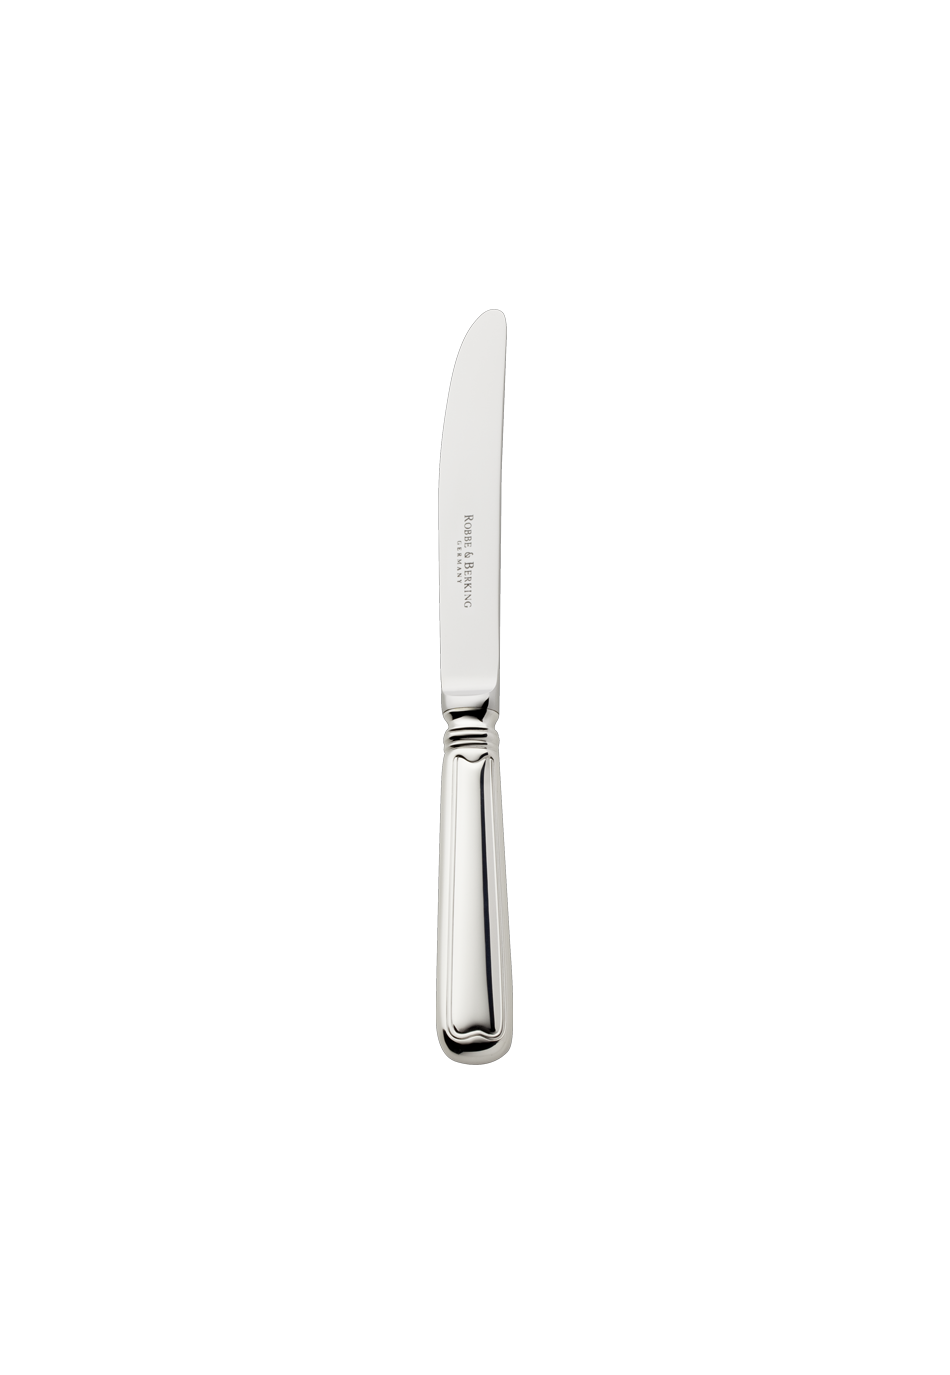 Alt-Faden Cake Knife / Fruit Knife (925 Sterling Silver)